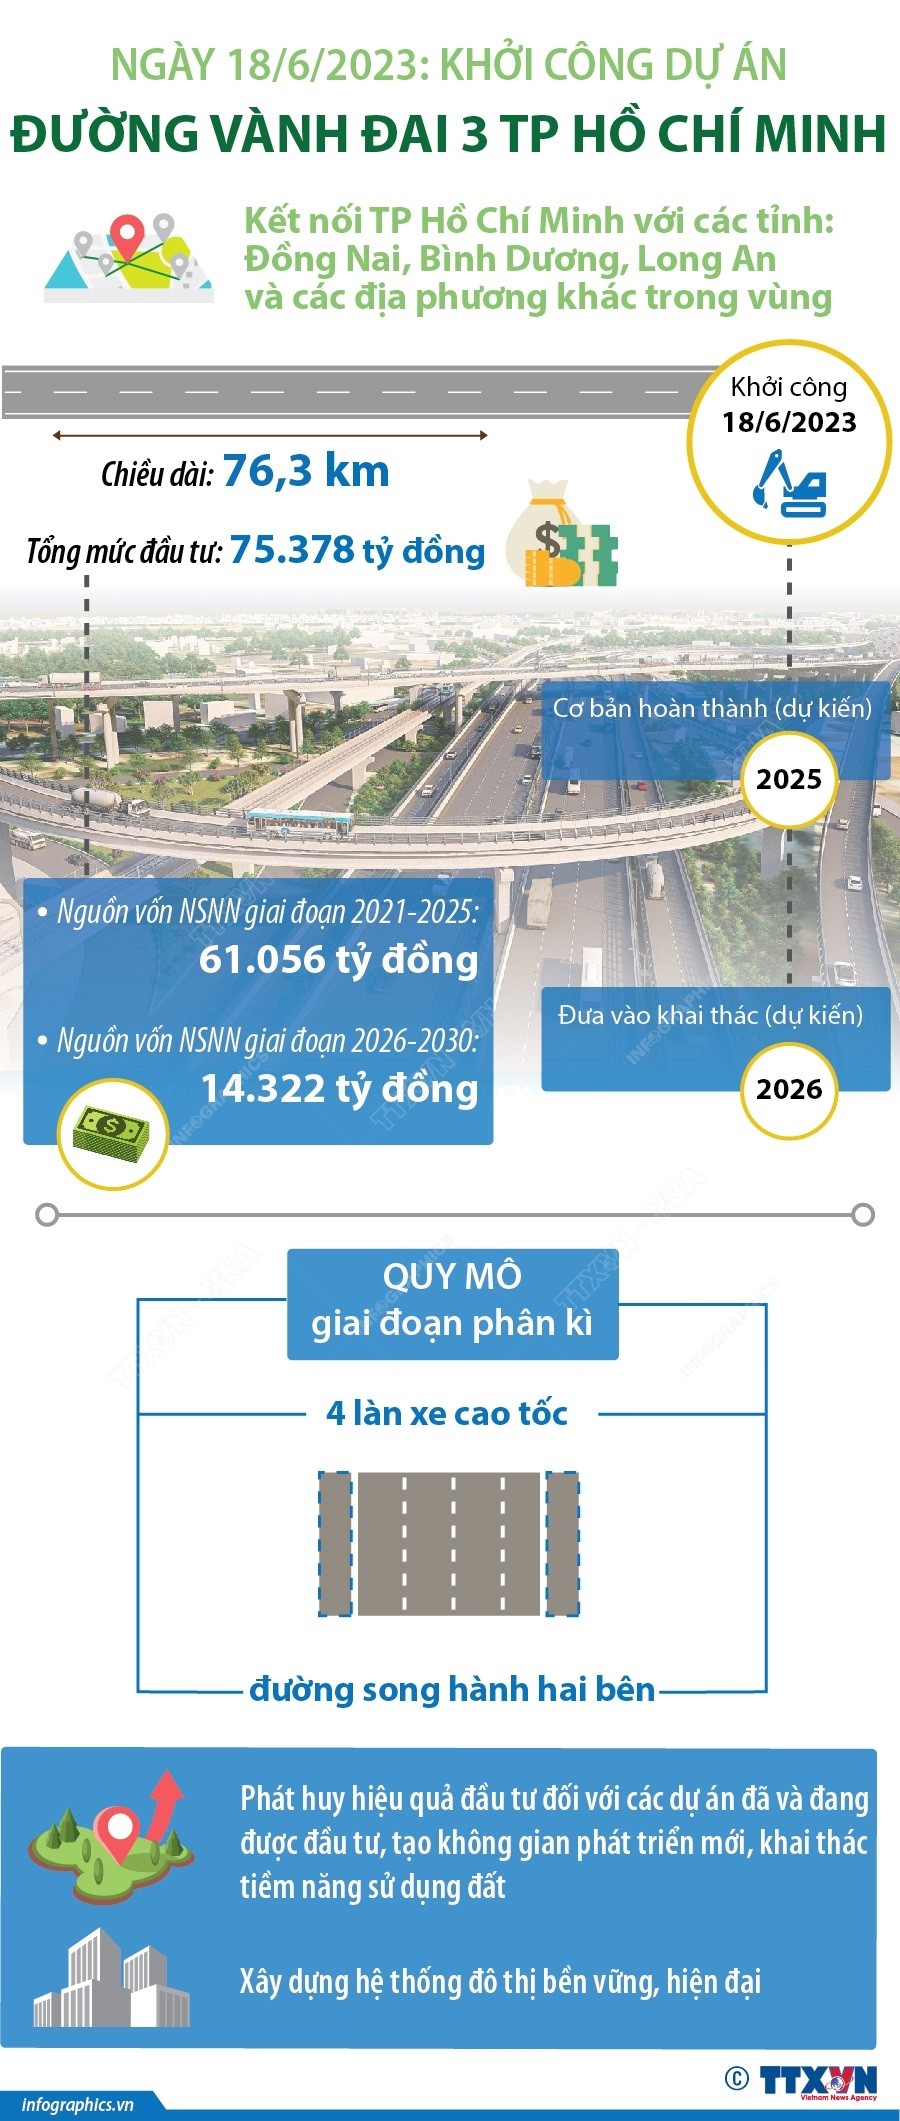 Ngày 18/6/2023: Khởi công Dự án đường vành đai 3 TP. Hồ Chí Minh